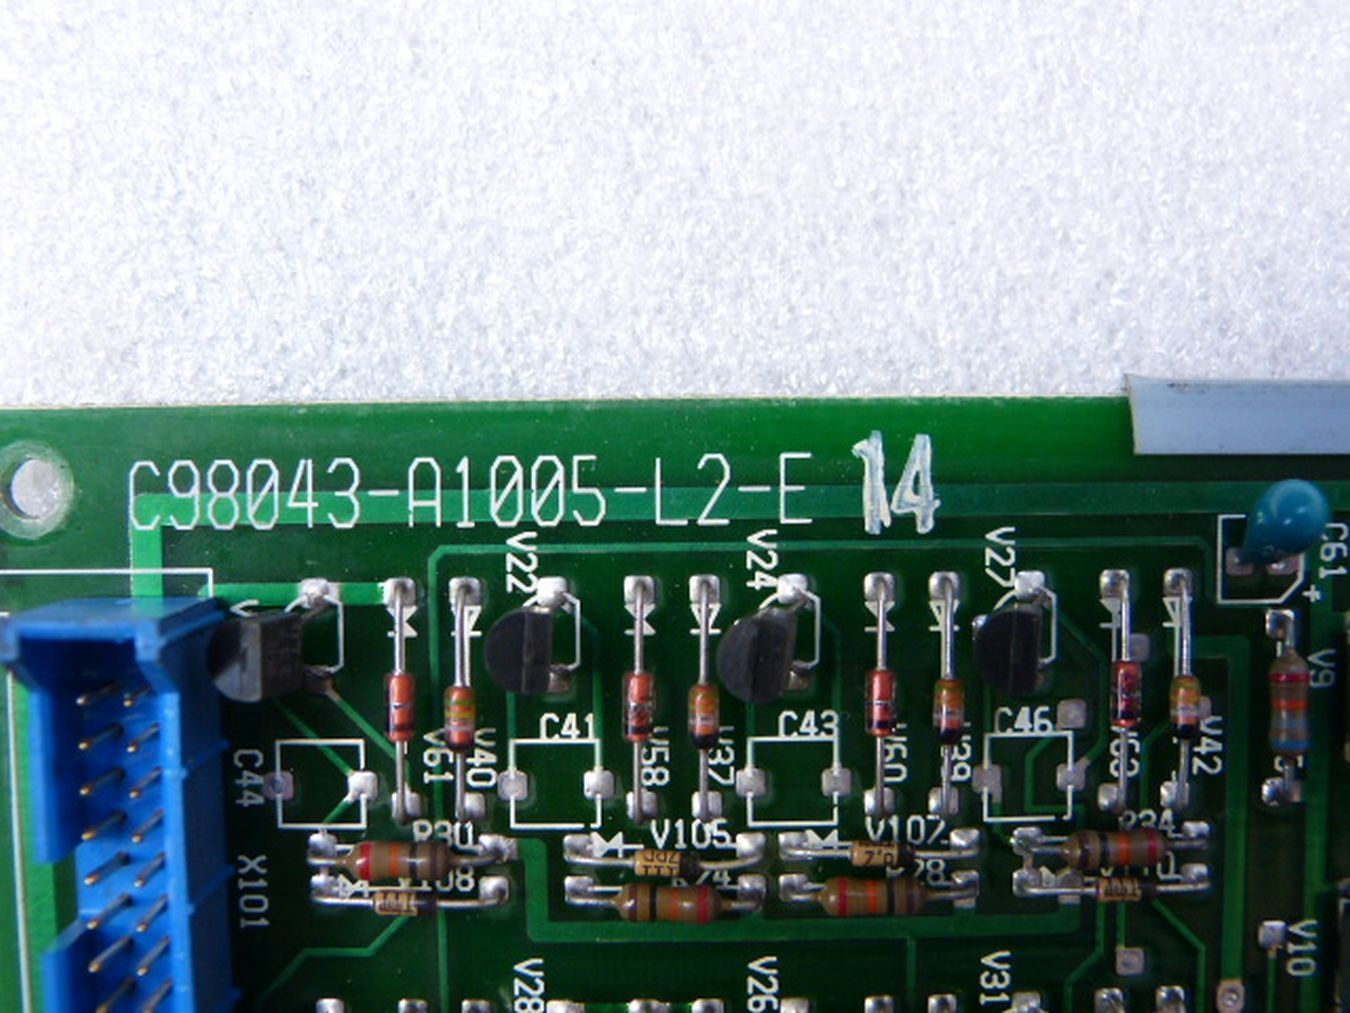 Siemens C98043-A1005-L2 -E 14 Karte C98043-A1005-L2,西门子,PLC